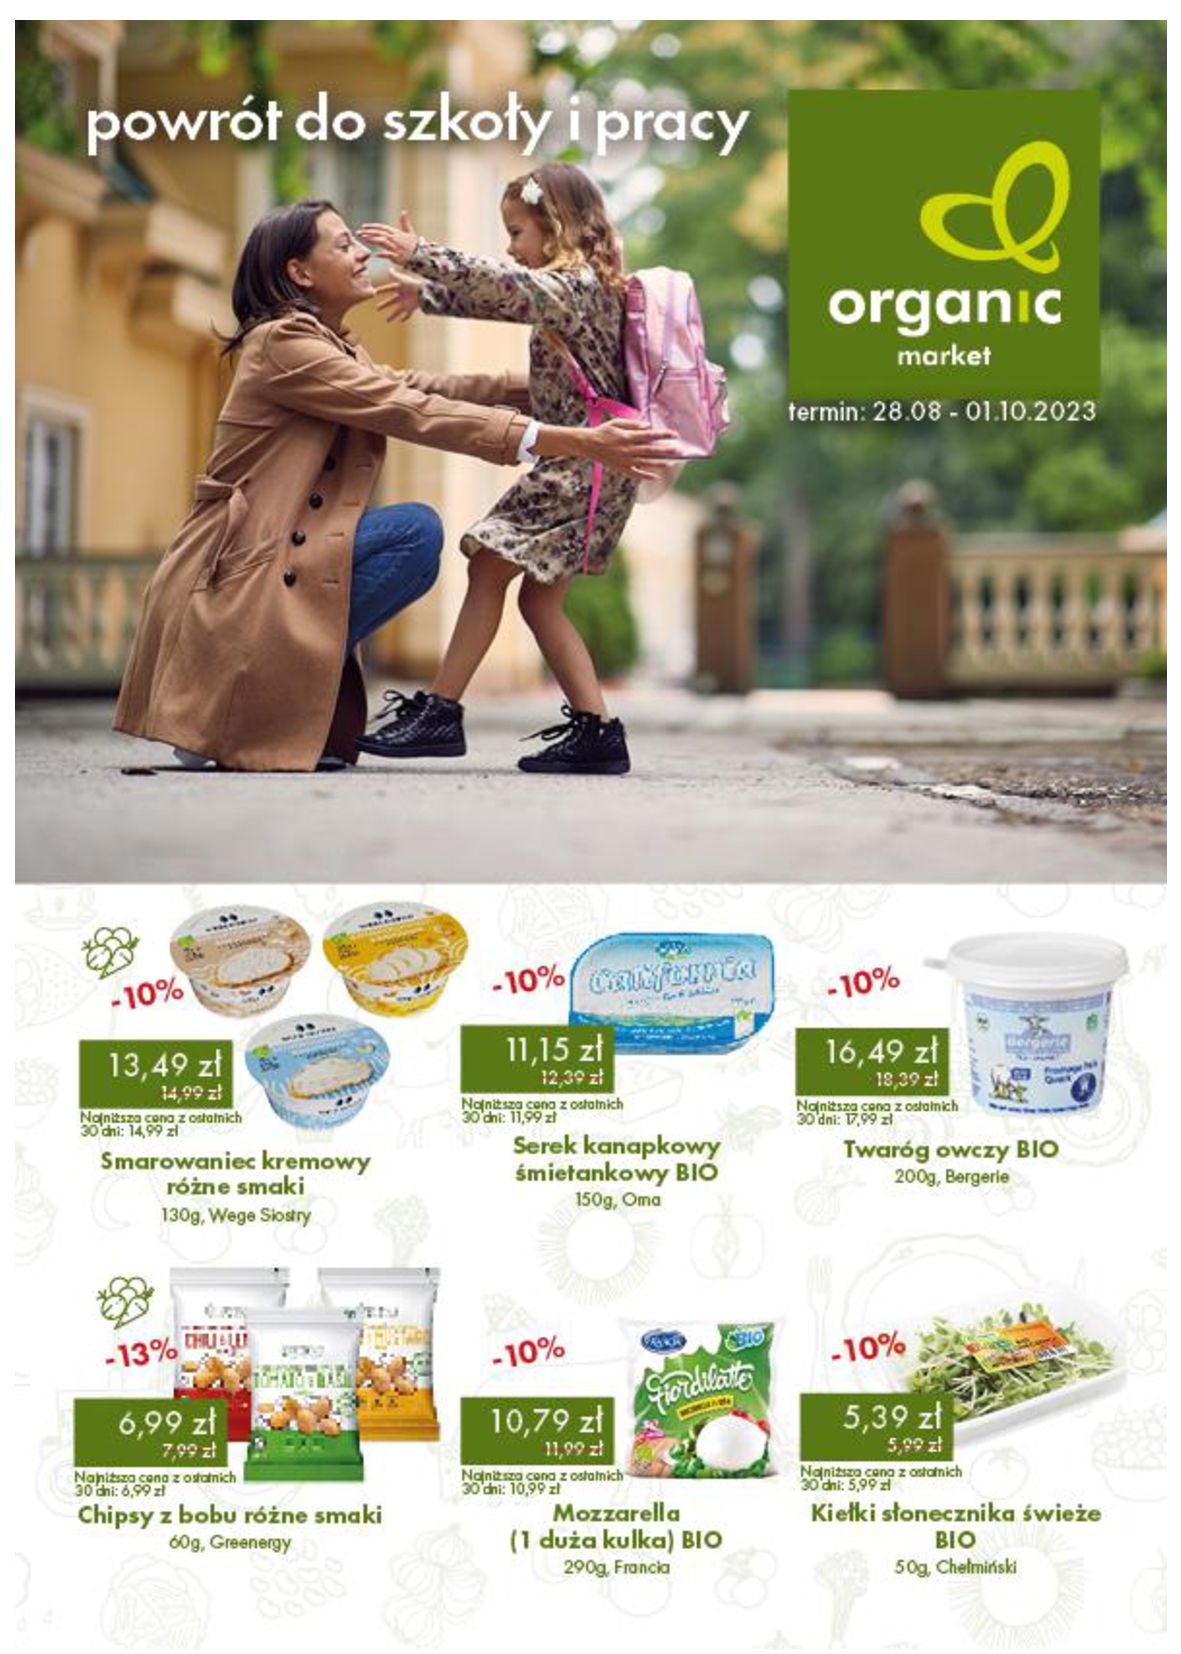 Organic Farma Zdrowia:  Gazetka Organic Farma Zdrowia 27.08.2023